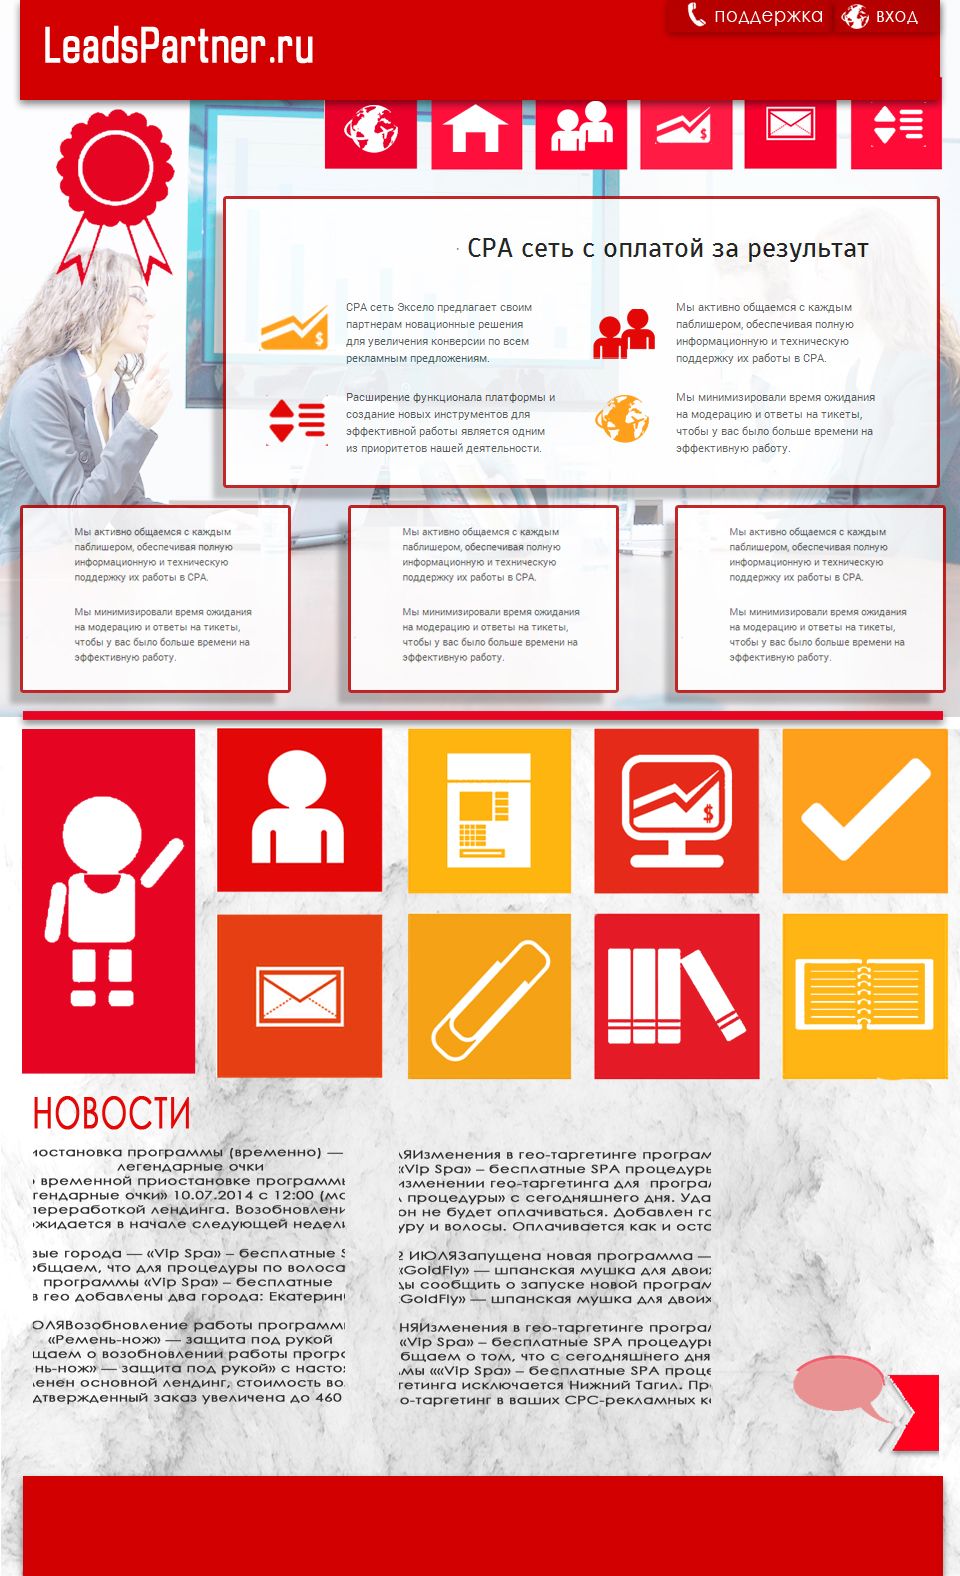 Дизайн для партнерской программы LeadsPartner.ru - дизайнер Maz